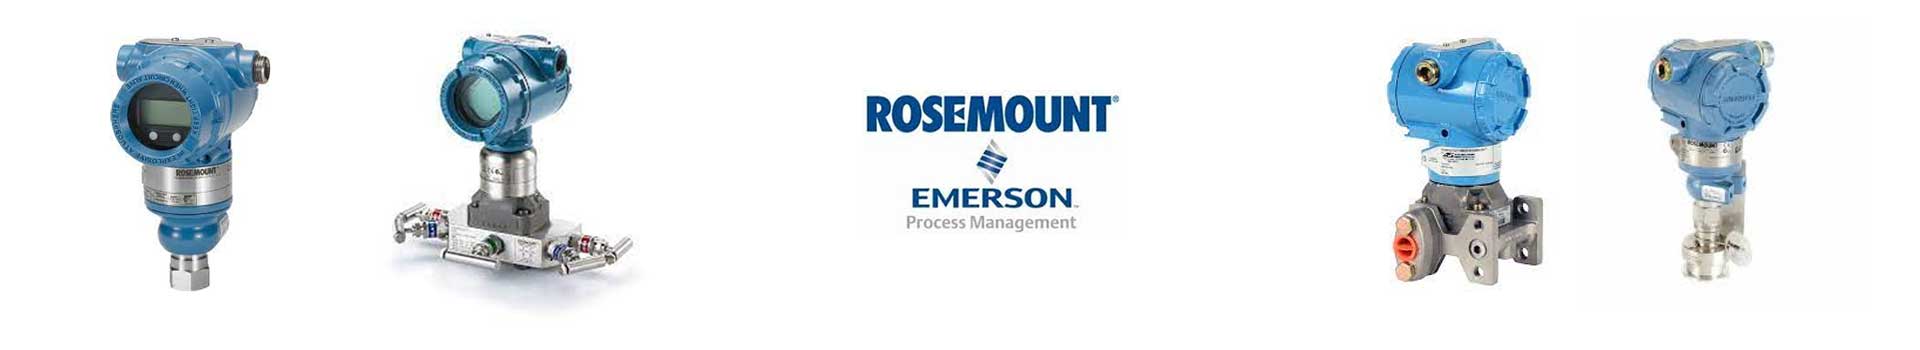 罗斯蒙特Rosemount温度变送器